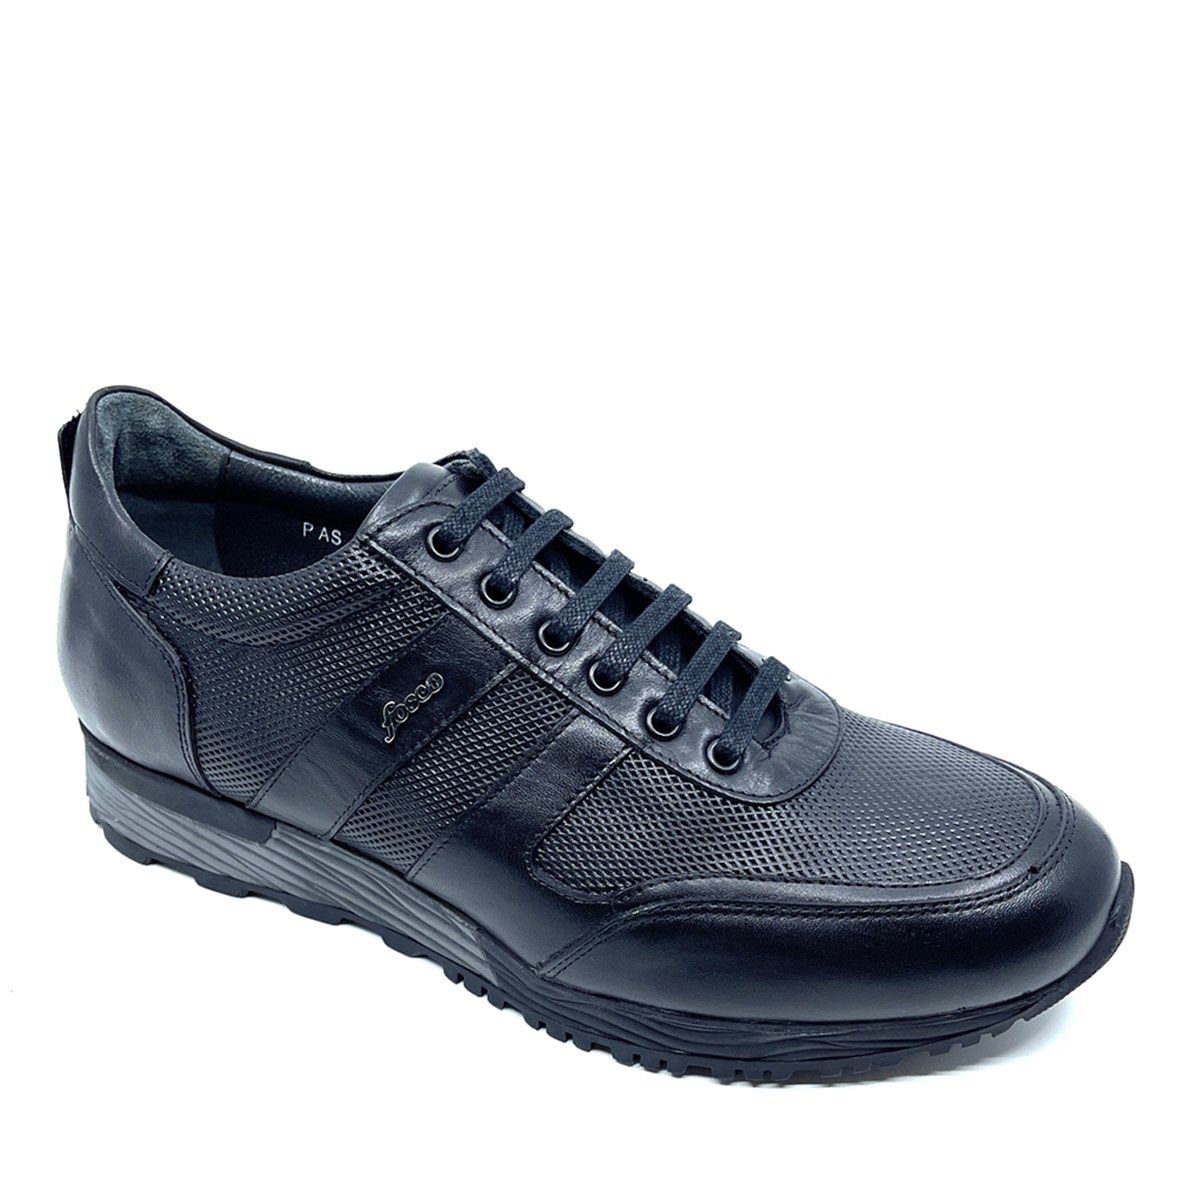 Erkek Sneakers Hakiki Deri Hafif Tabanlı Ayakkabı, Renk: Siyah, Beden: 40